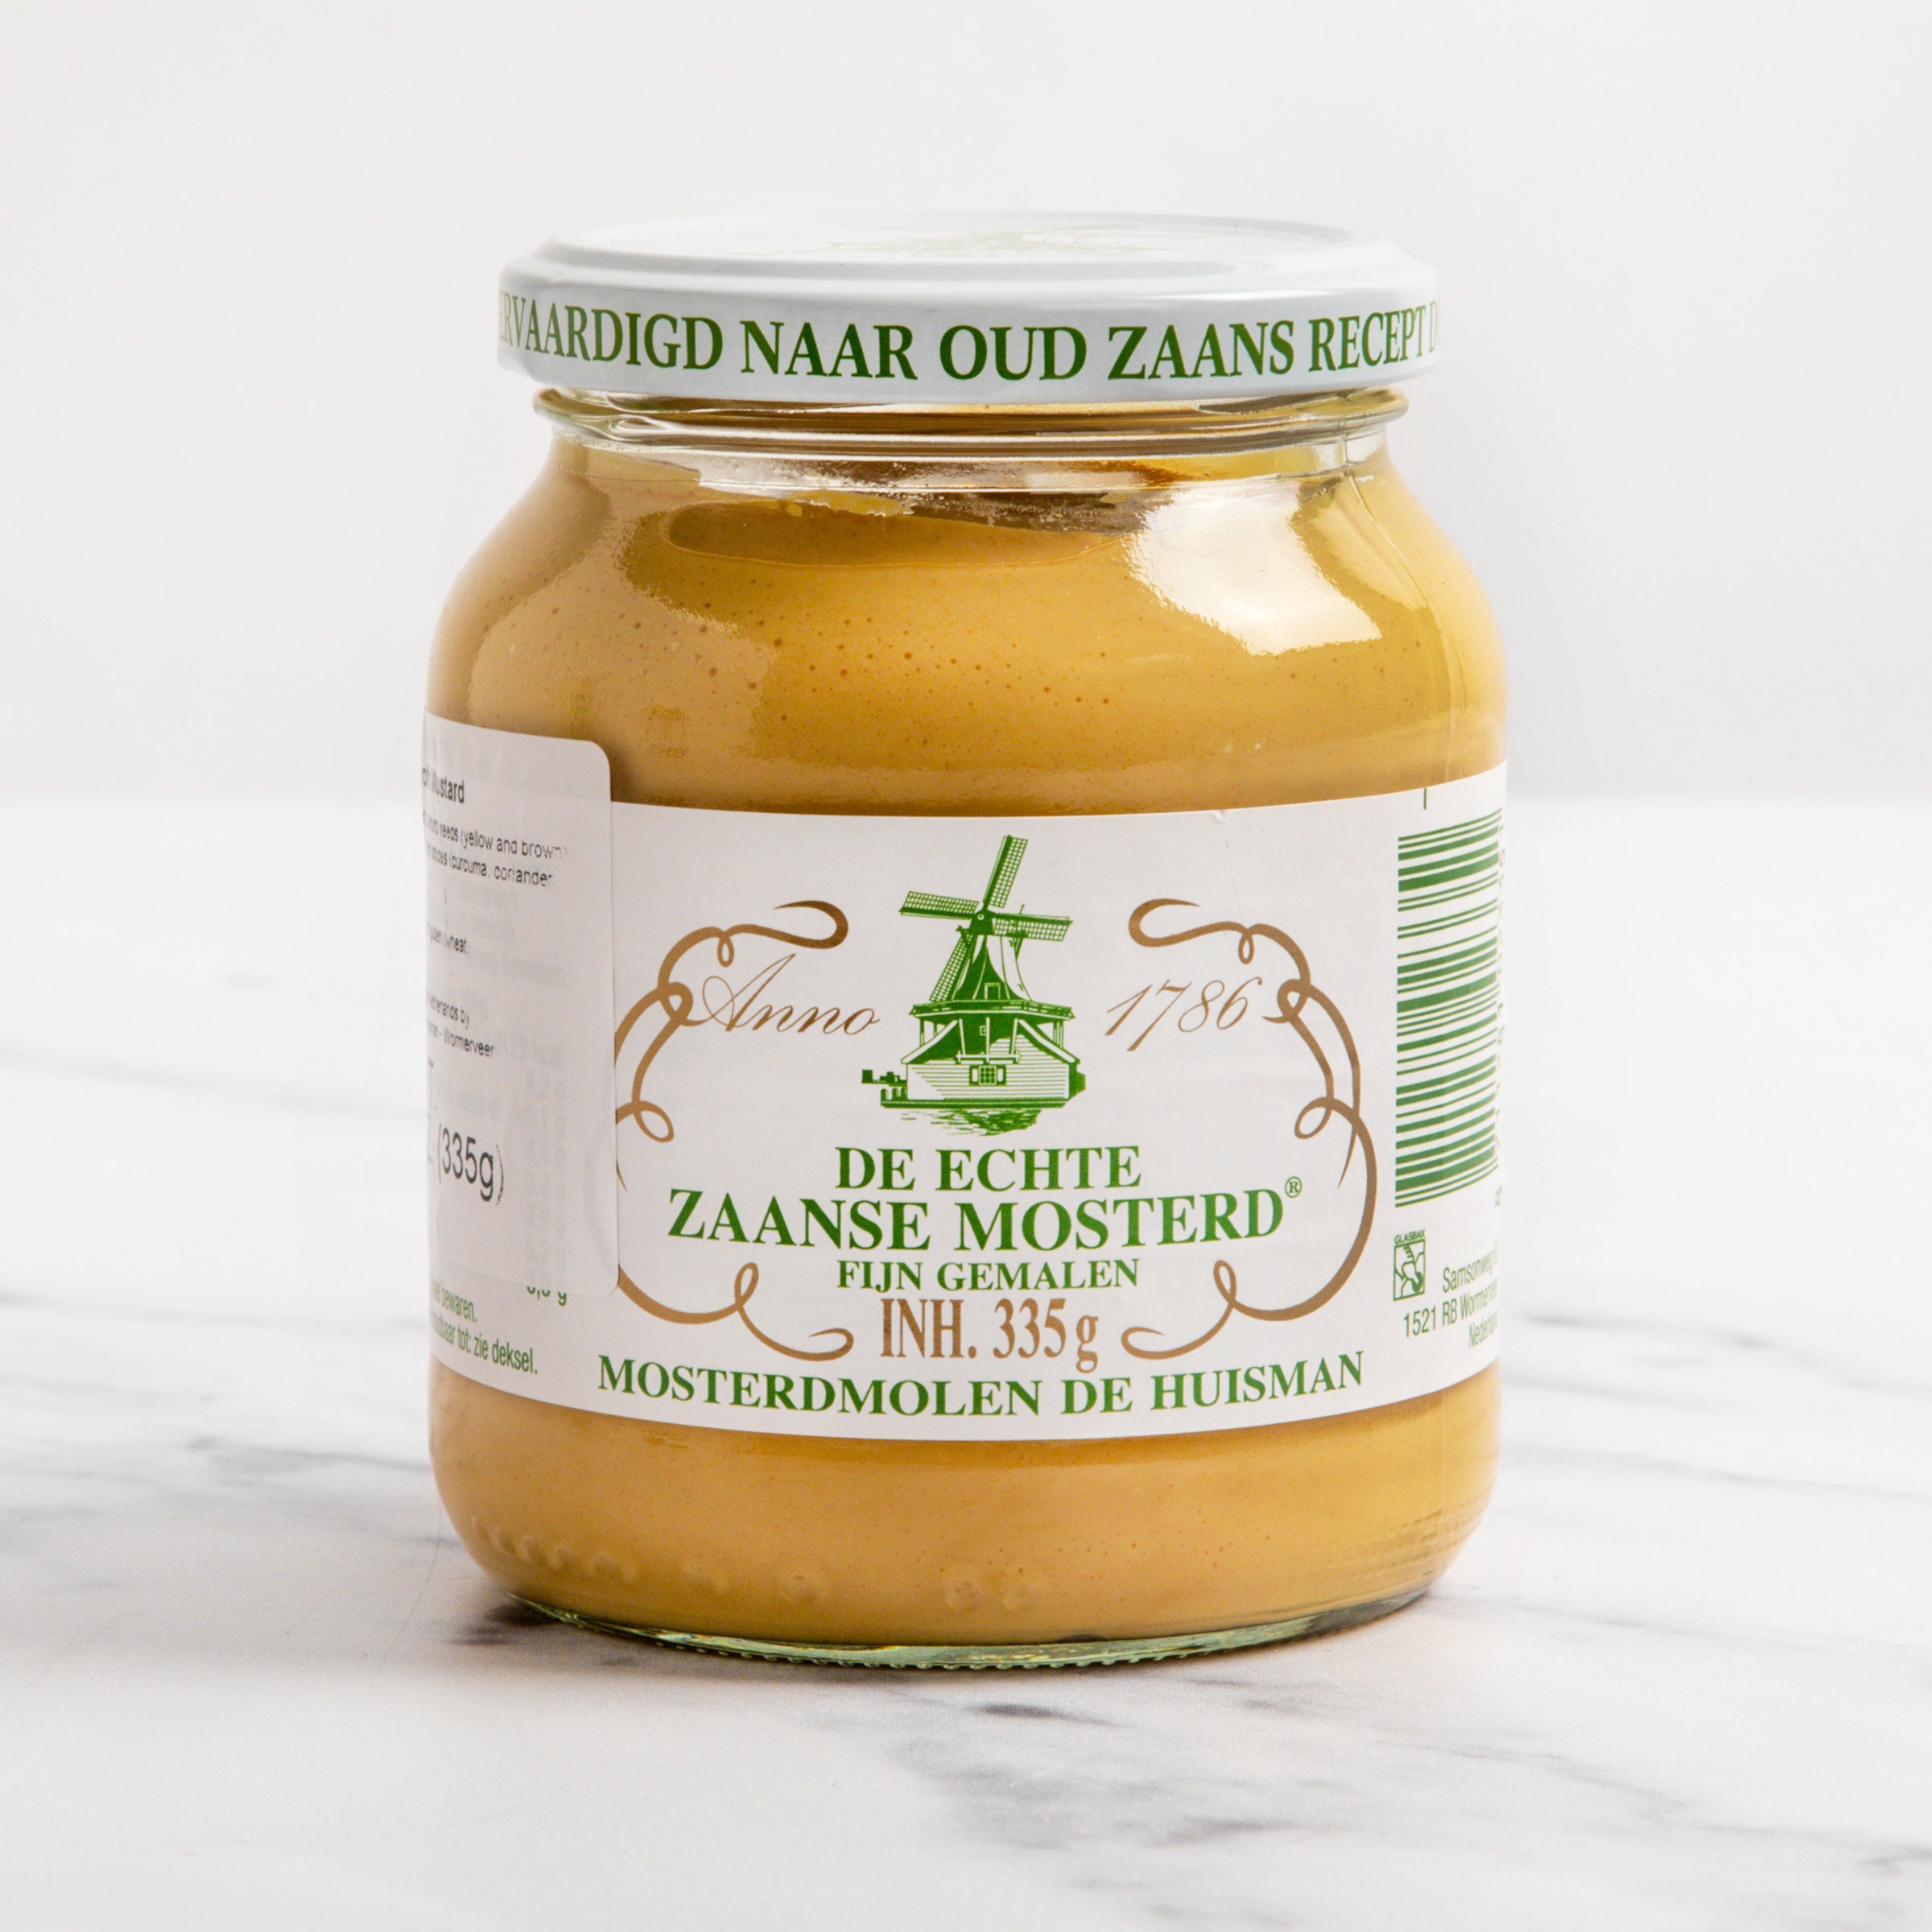 igourmet_8372_Zaanse Molen Dutch Mustard_Mosterdmolen de Huisman_Condiments & Spreads